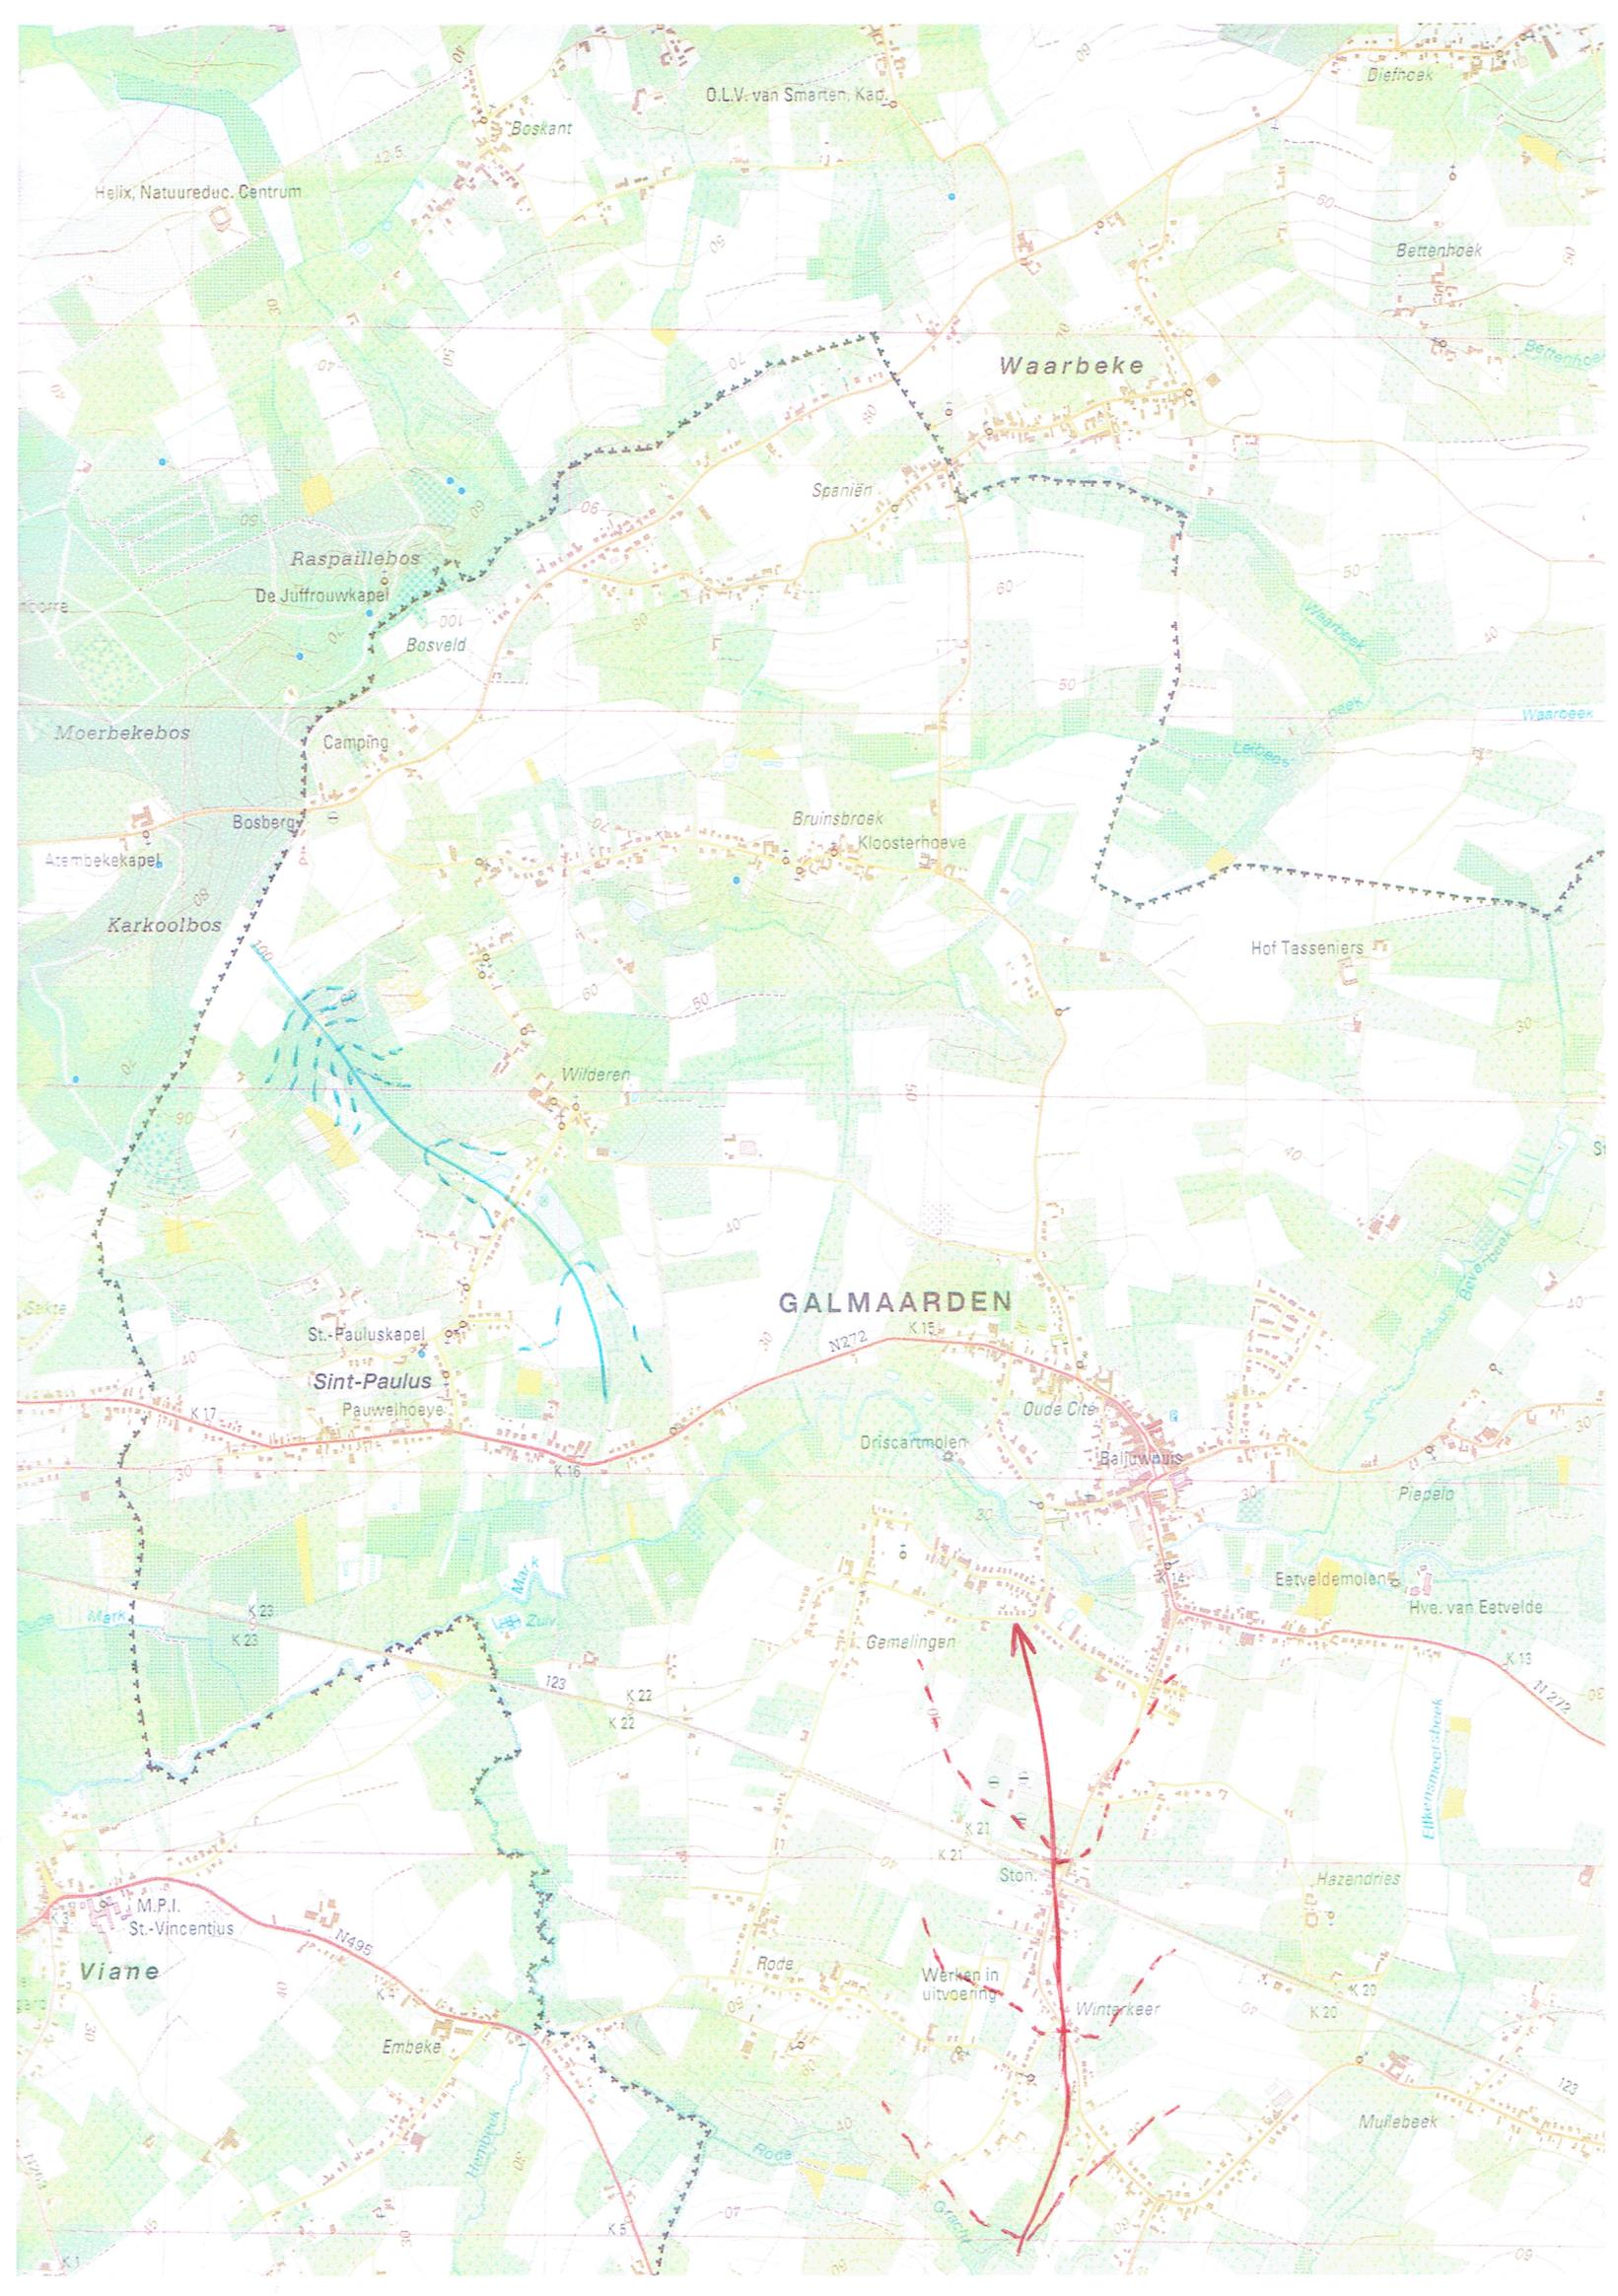 Figuur 42: A4-uitsnede topografische kaart met aanduiding waterscheidingslijn & droog dal Bron: NGI (Nationaal Geografisch Instituut),